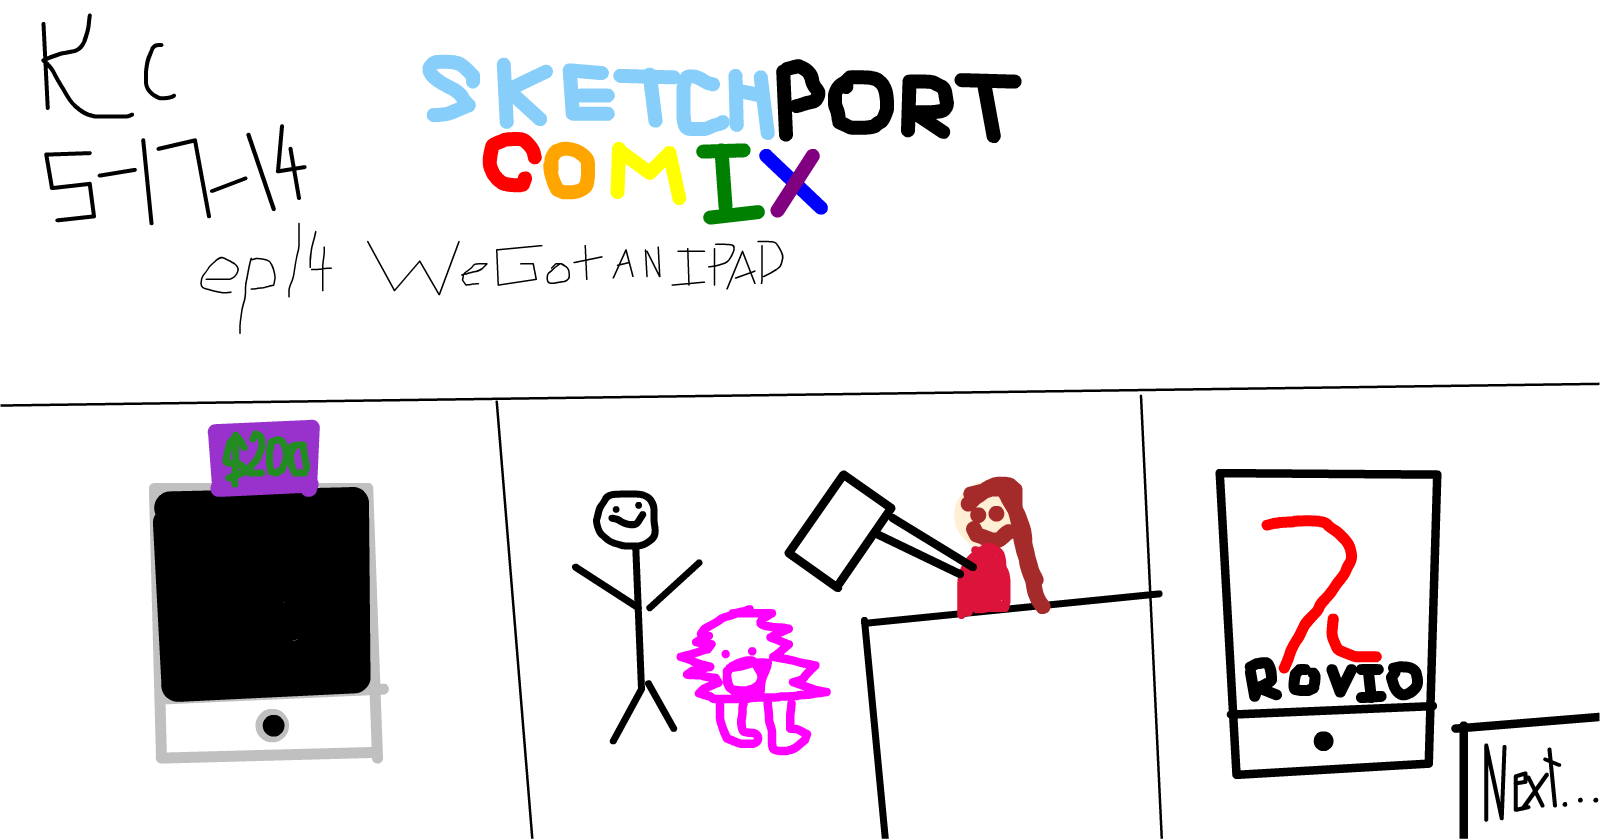 Sketchport Comix: Episode 14 We Got an IPAD